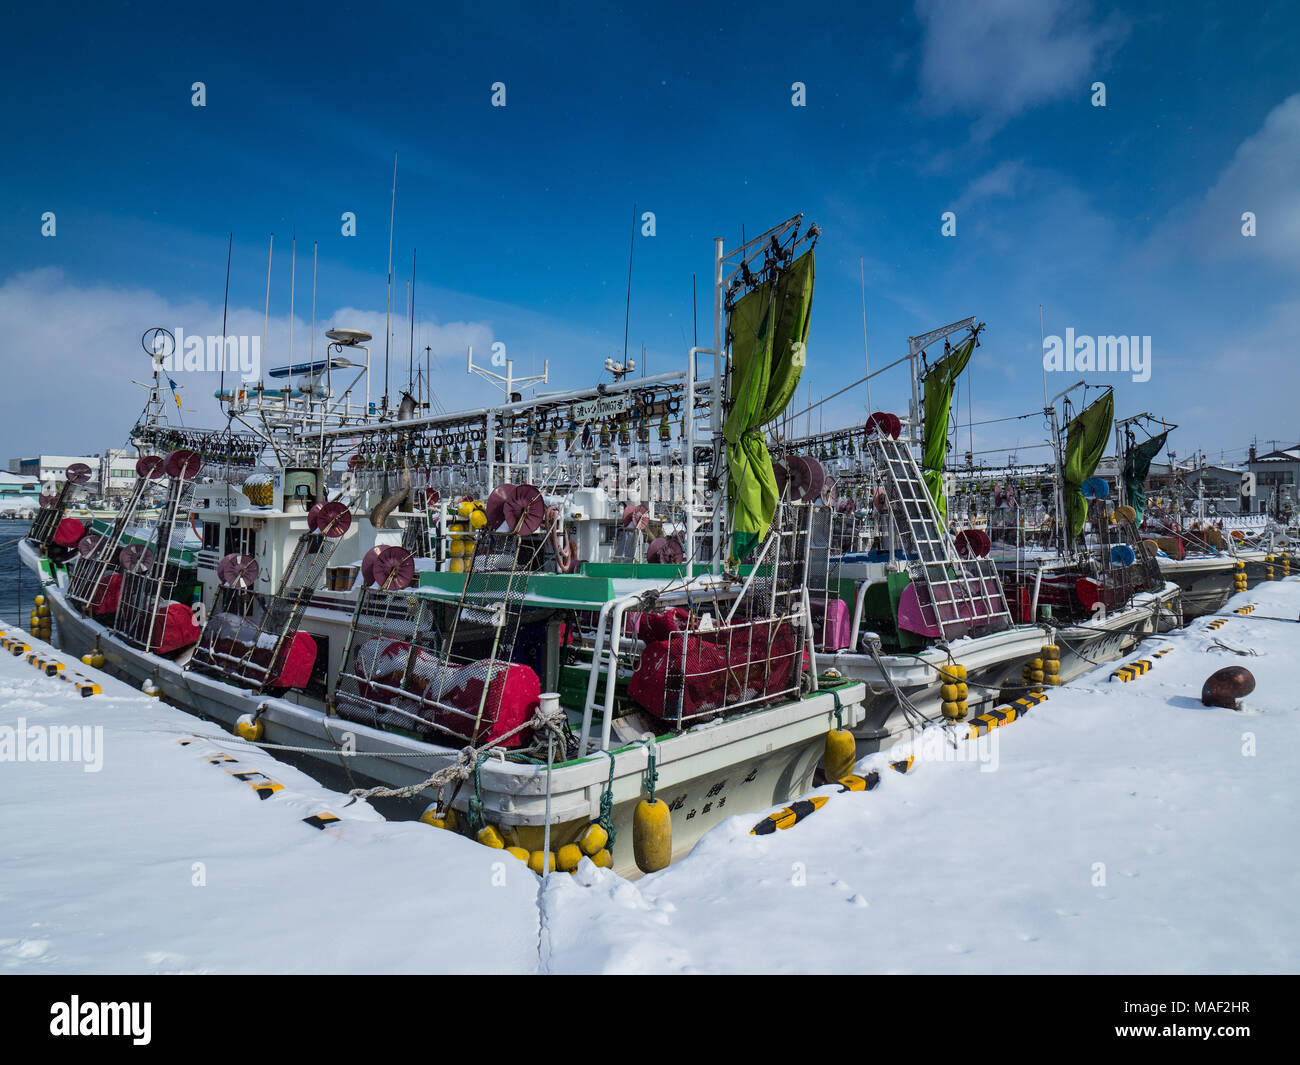 Hokkaido Winter - bateaux de pêche de Squid attachés dans le port d'Hakodate, Hokkaido, Japon. Hiver au Japon. Flotte de pêche japonaise. Banque D'Images